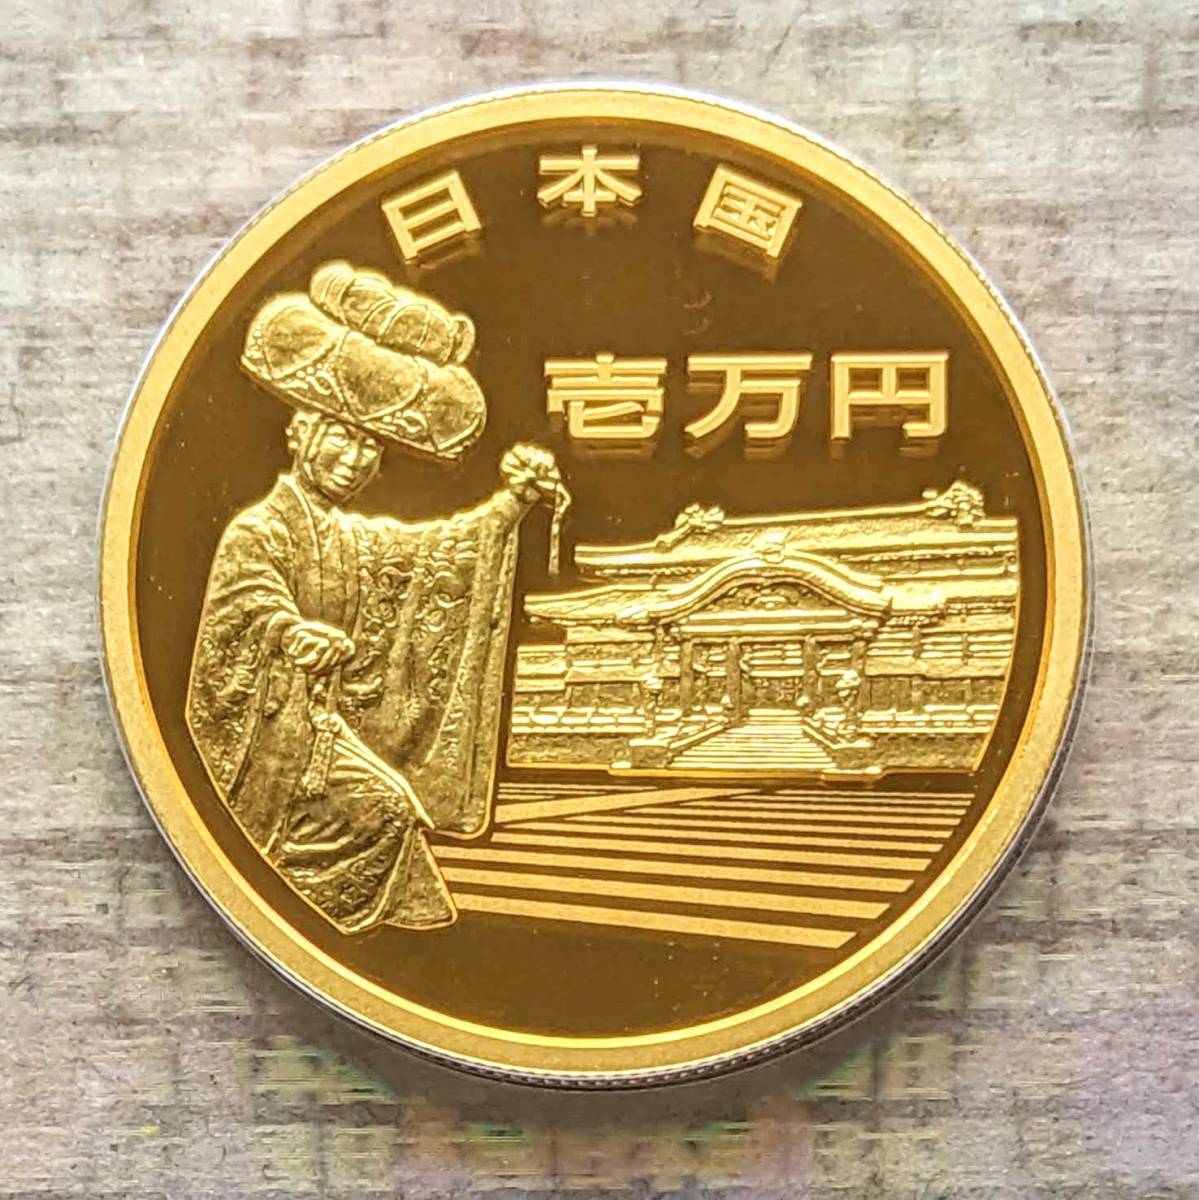 ブリヤンテス・レッド 沖縄復帰50周年記念硬貨 一万円金貨